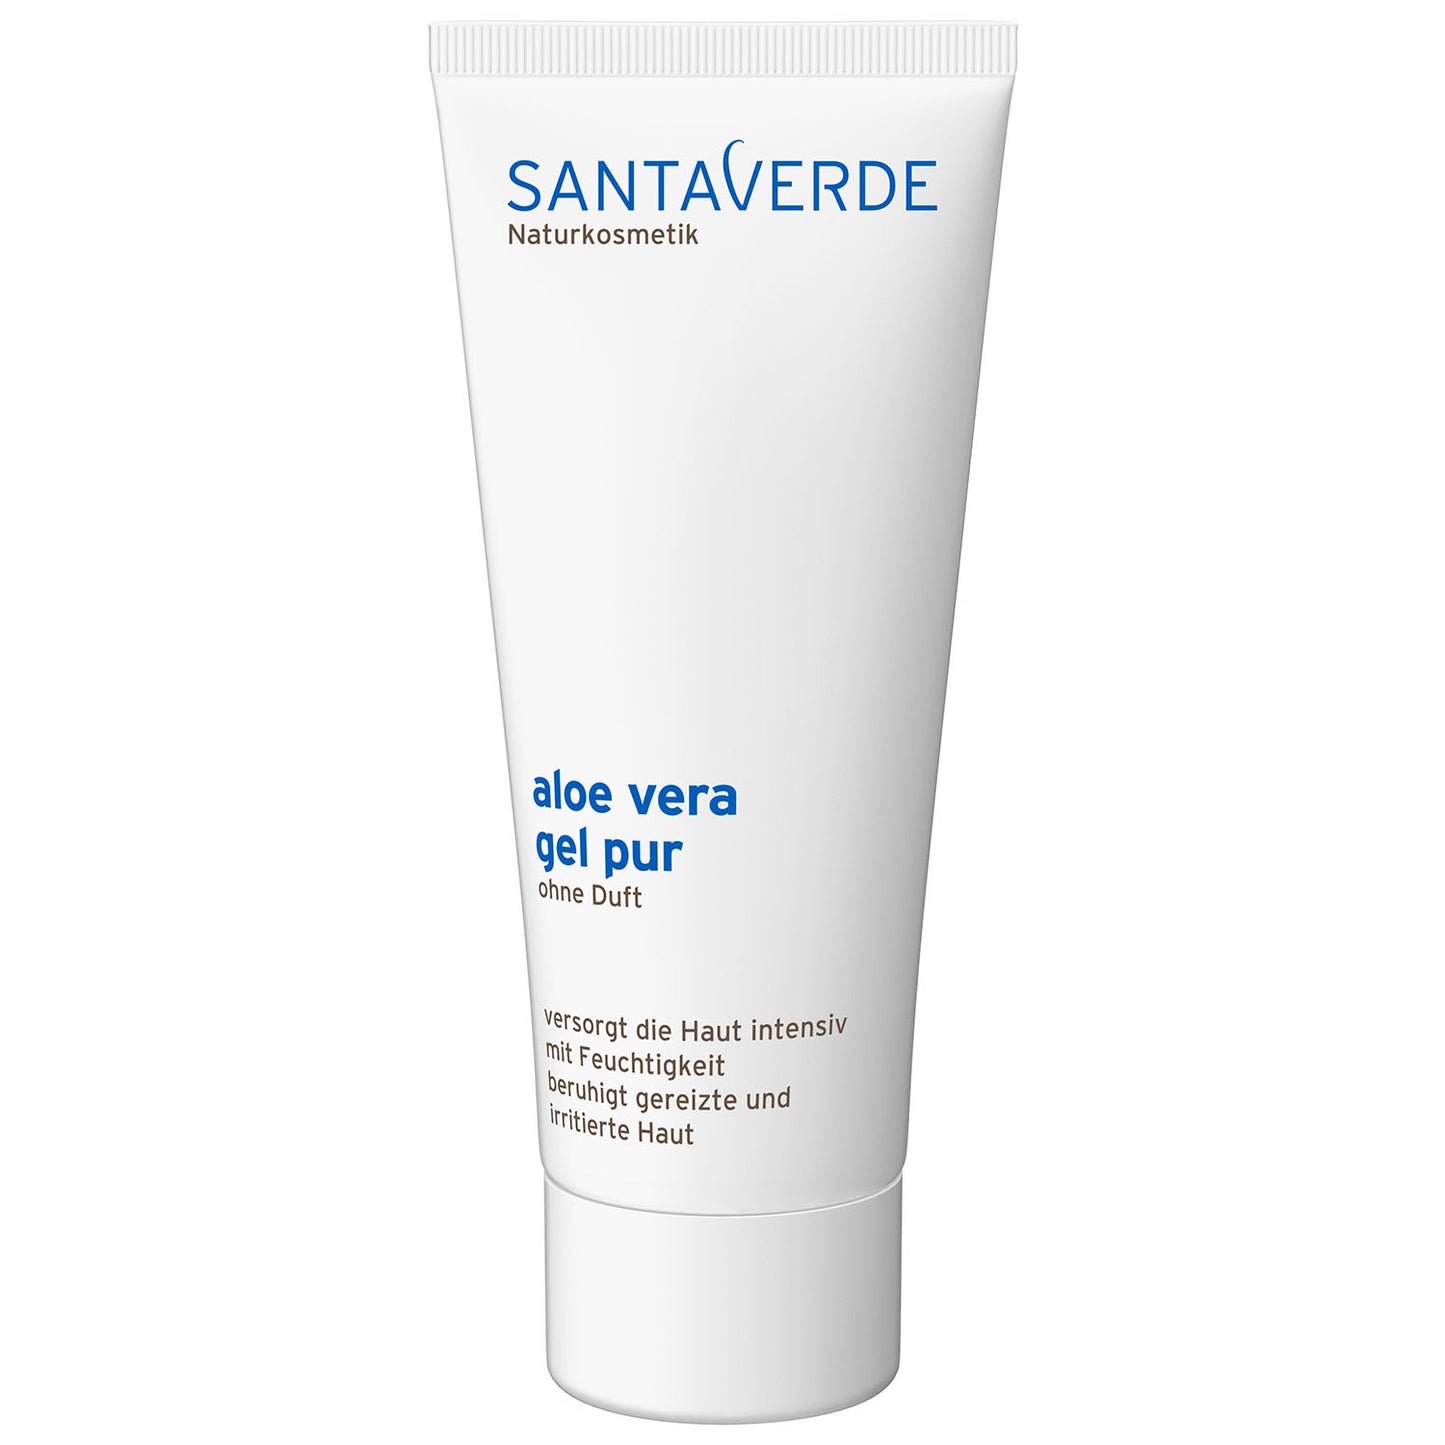 Santaverde - Aloe Vera Gel Pur ohne Duft - Spezial Körperpflege - 100 ml